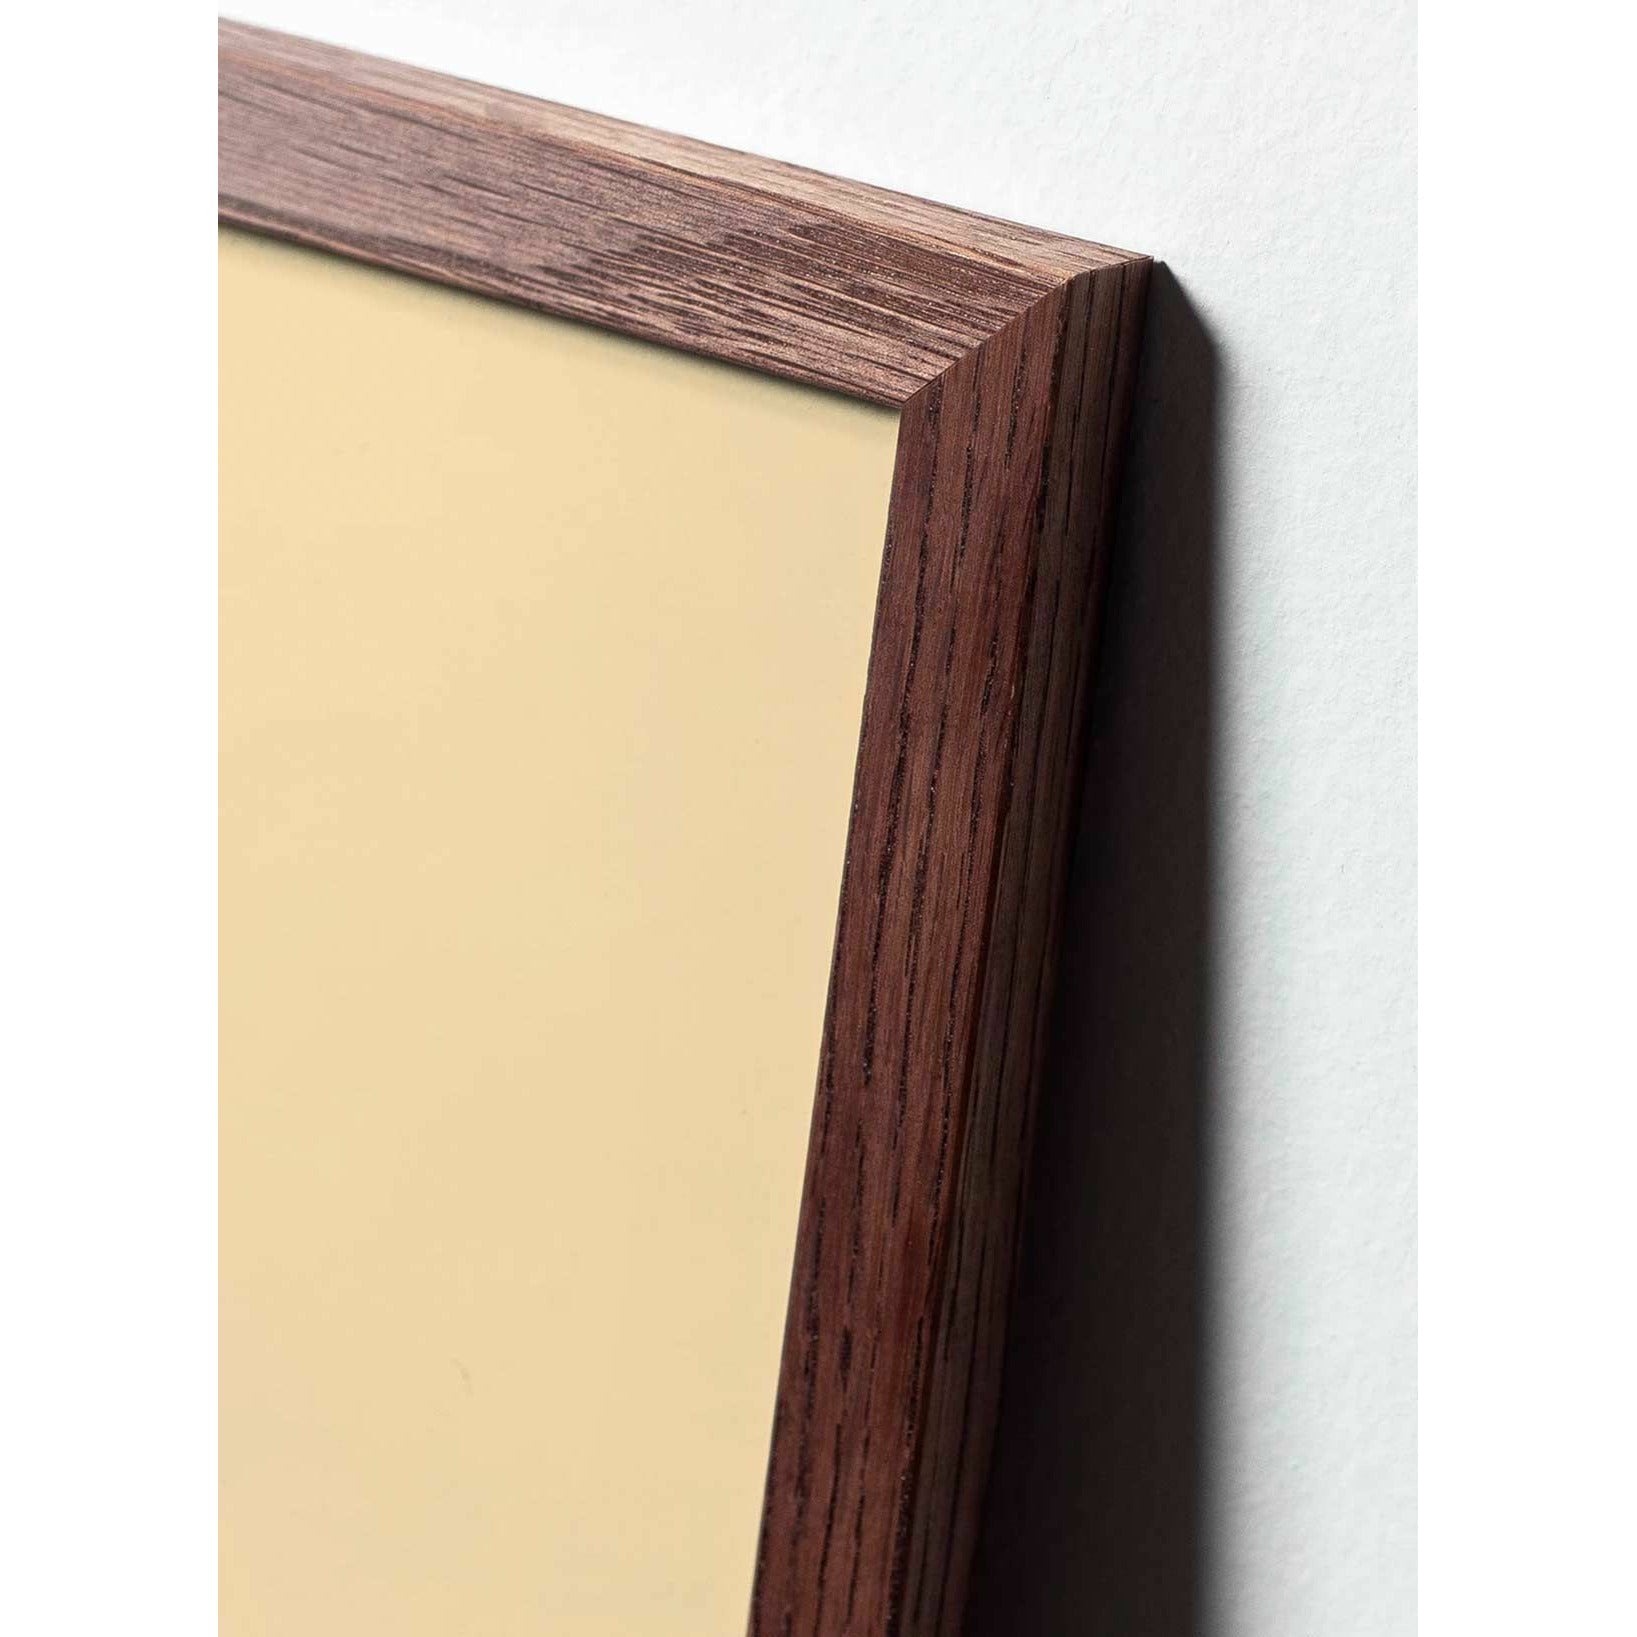 Póster de diseño de diseño de oso de peluche de creación, marco hecho de madera oscura de 70 x100 cm, gris